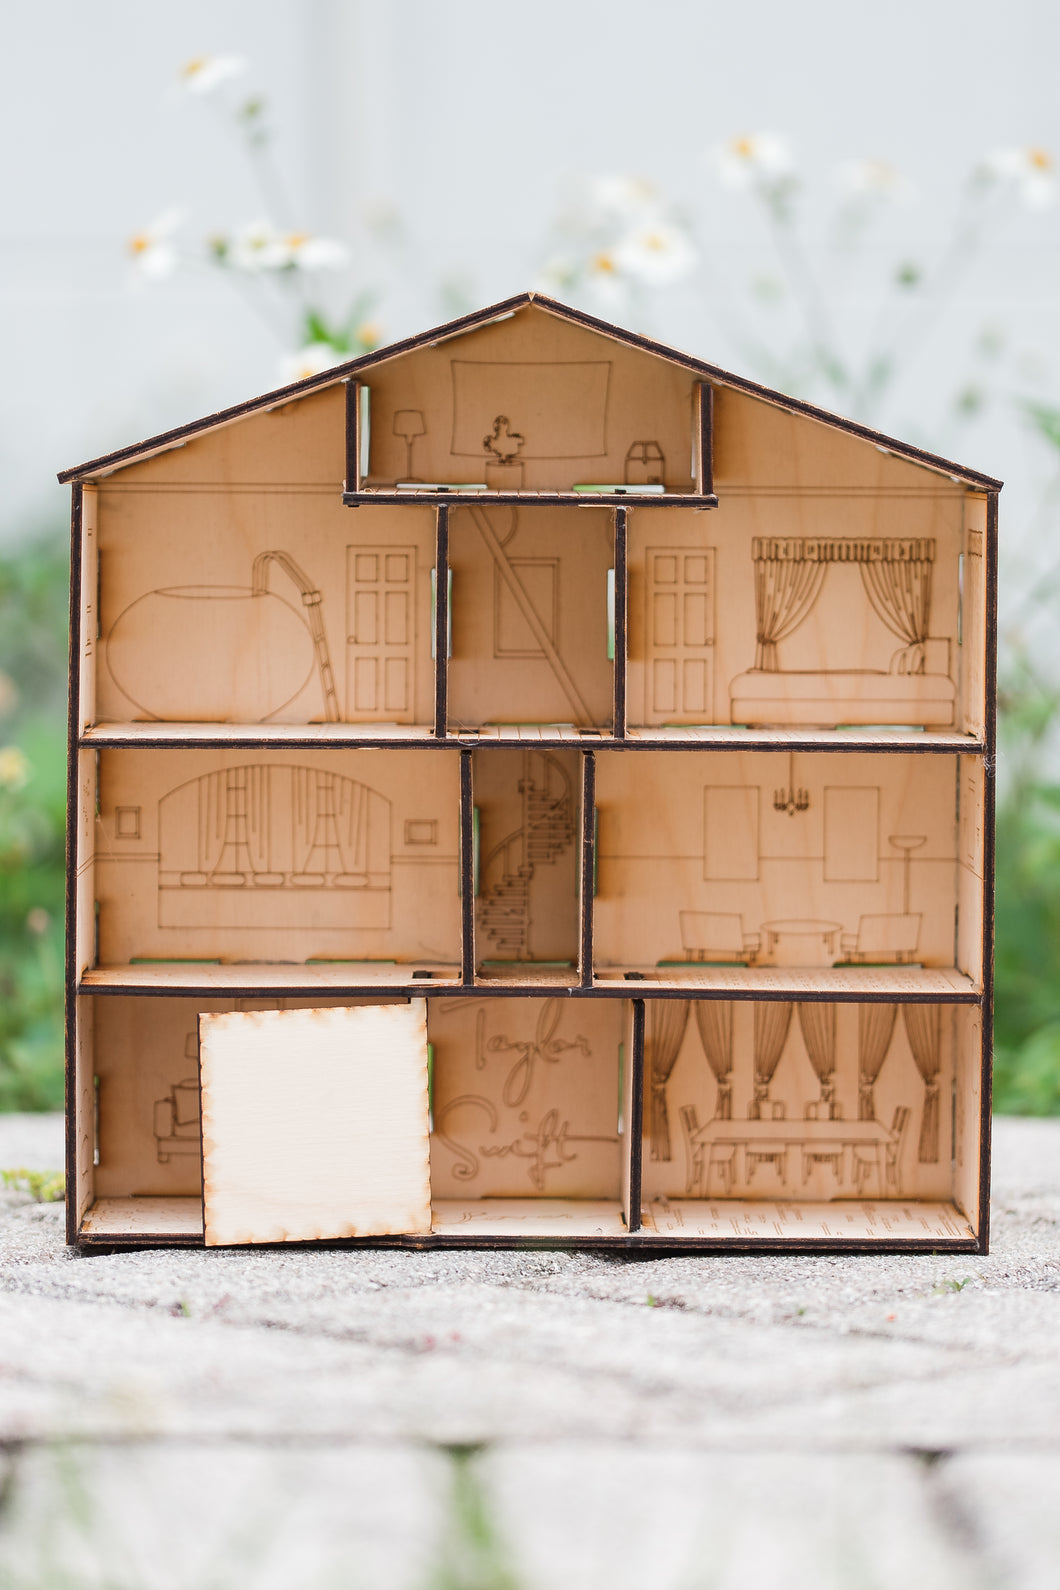 Build Your Own Lover House Kit! (Read Description)